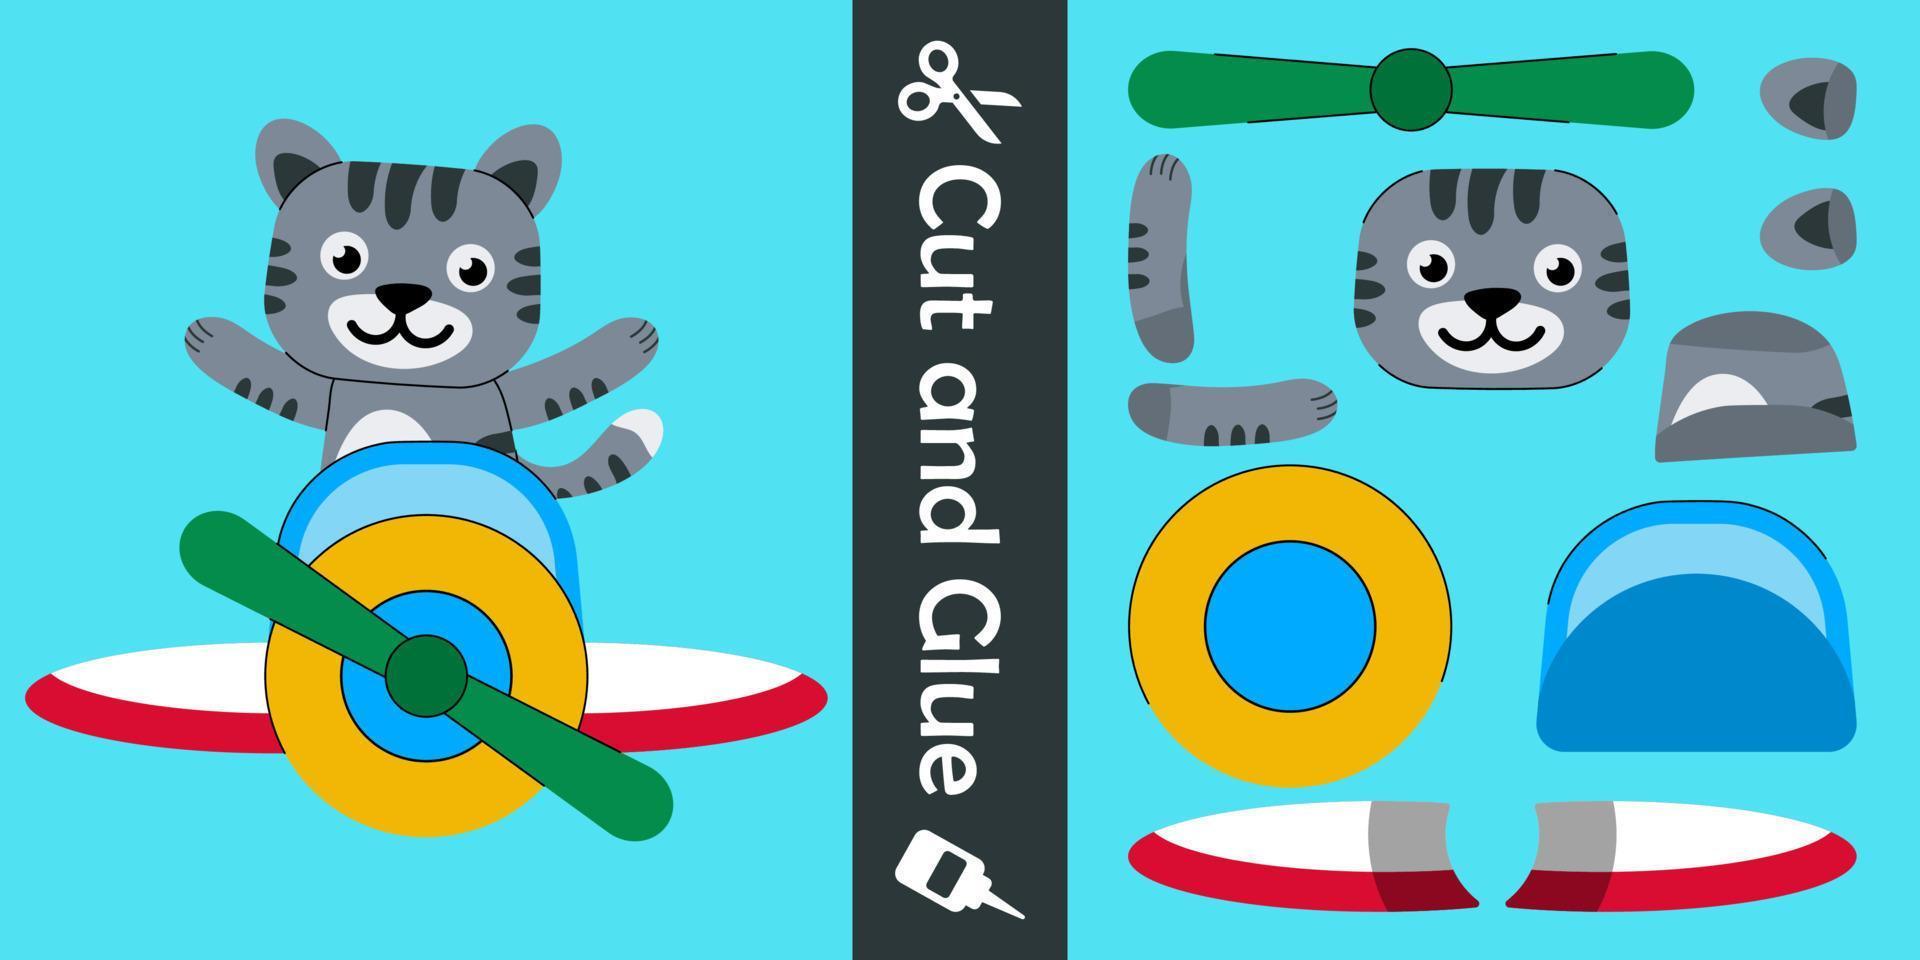 schattige kat die op een vliegtuig vliegt. onderwijs papier spel voor kinderen. knip en lijm. vector illustratie